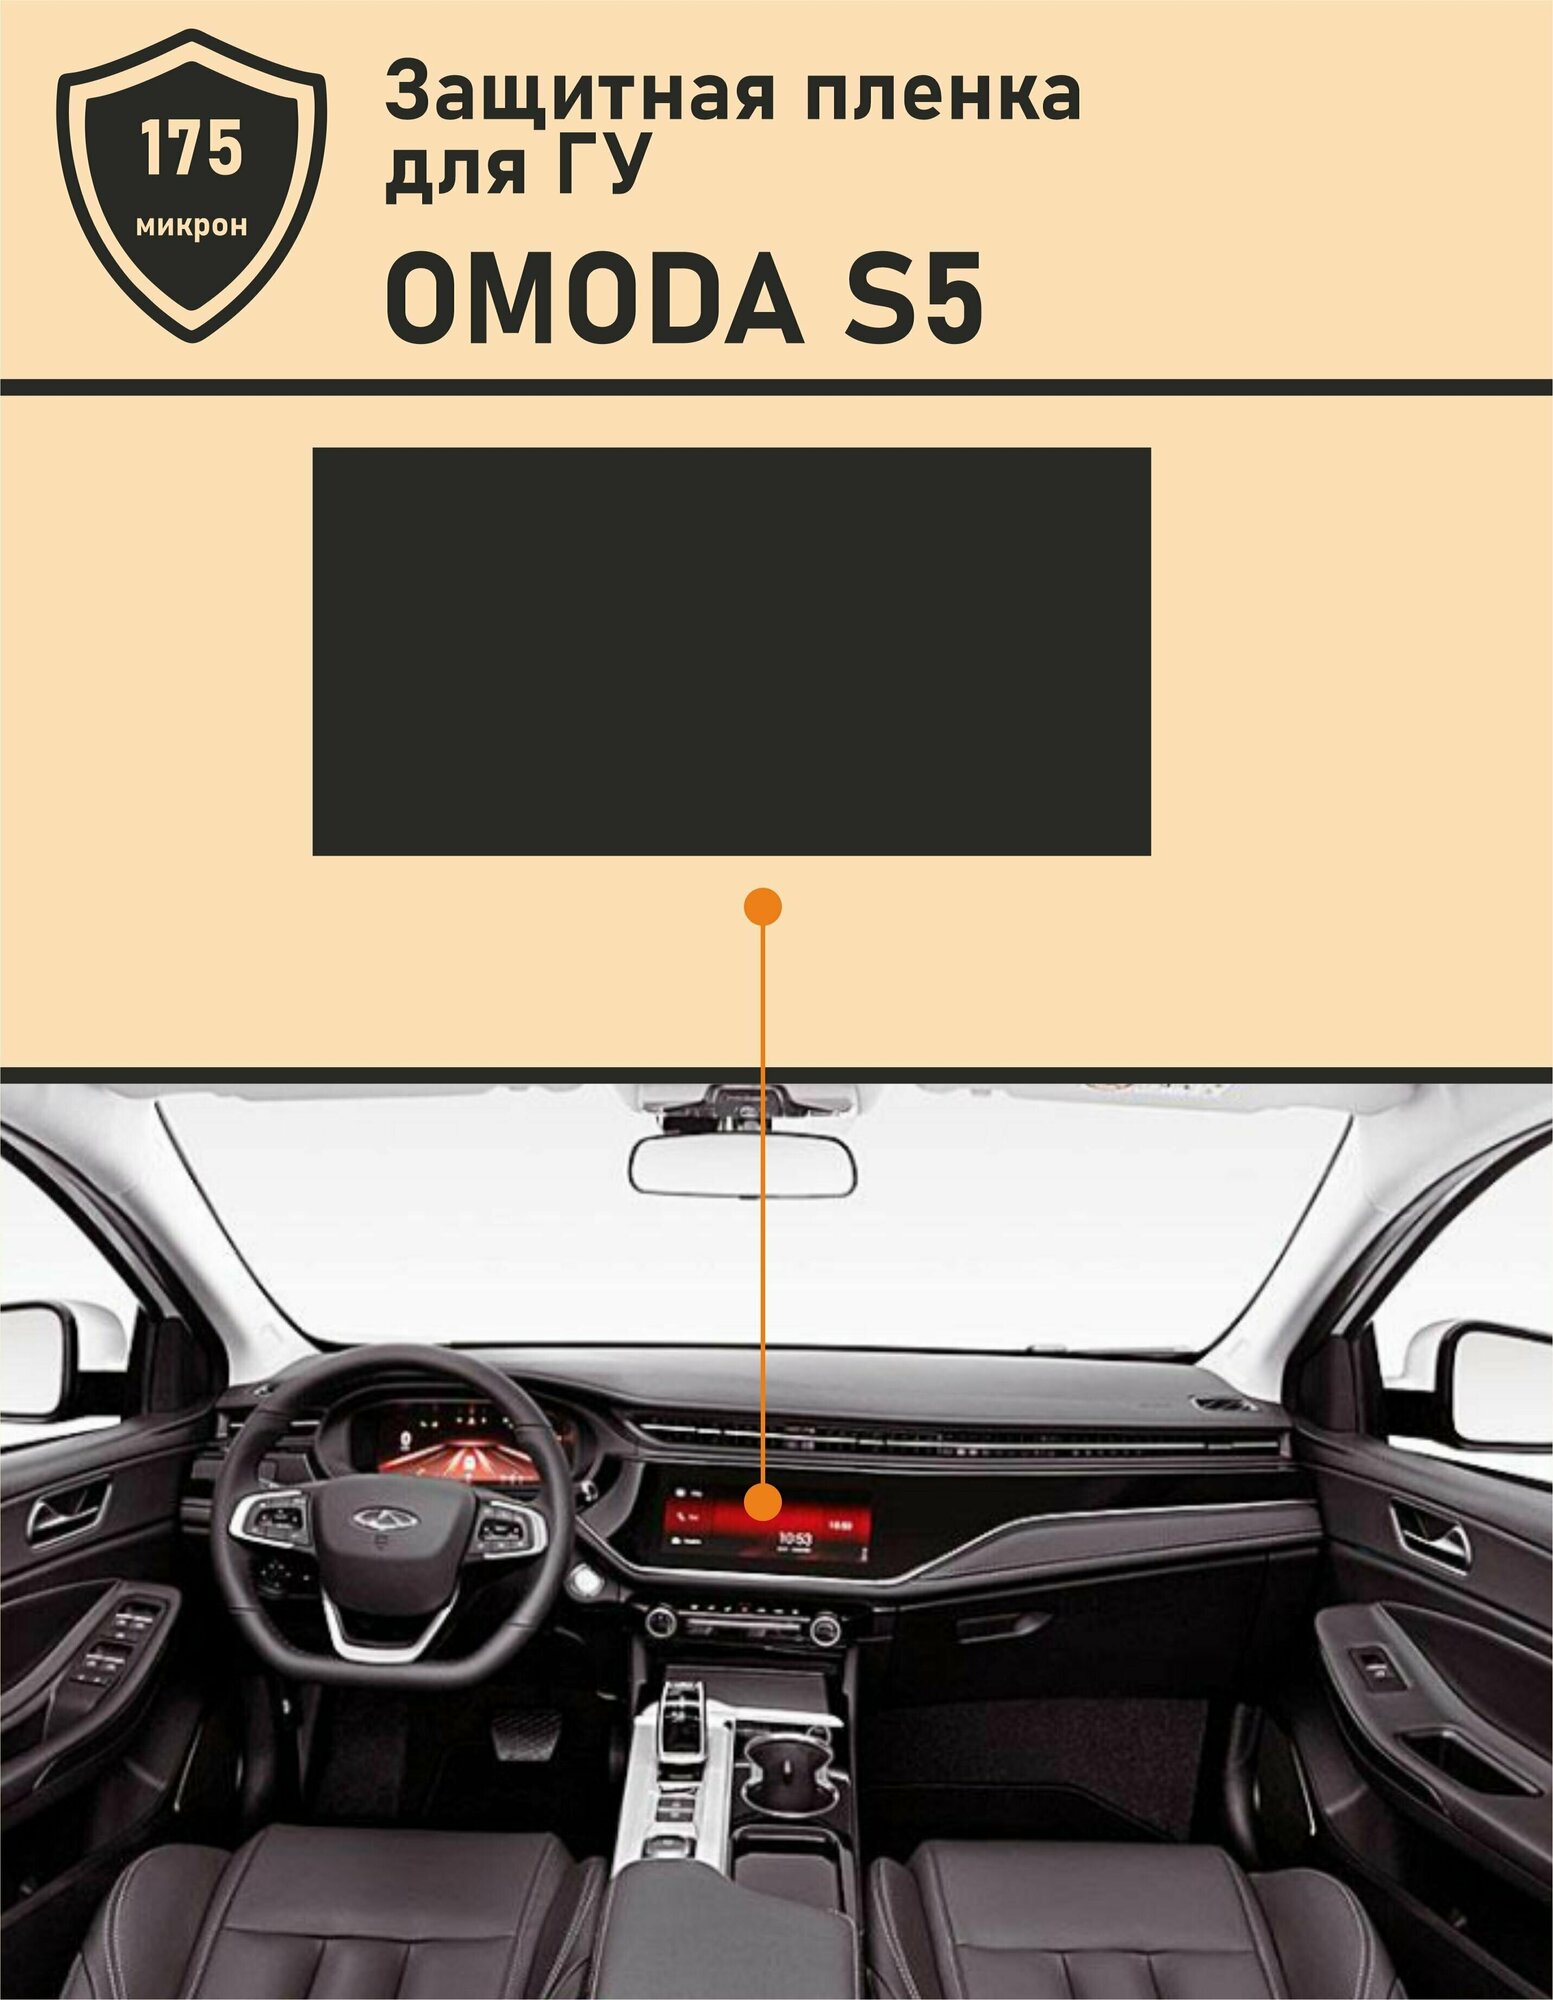 Omoda S5 /Омода S5/ Матовая защитная пленка для дисплея ГУ